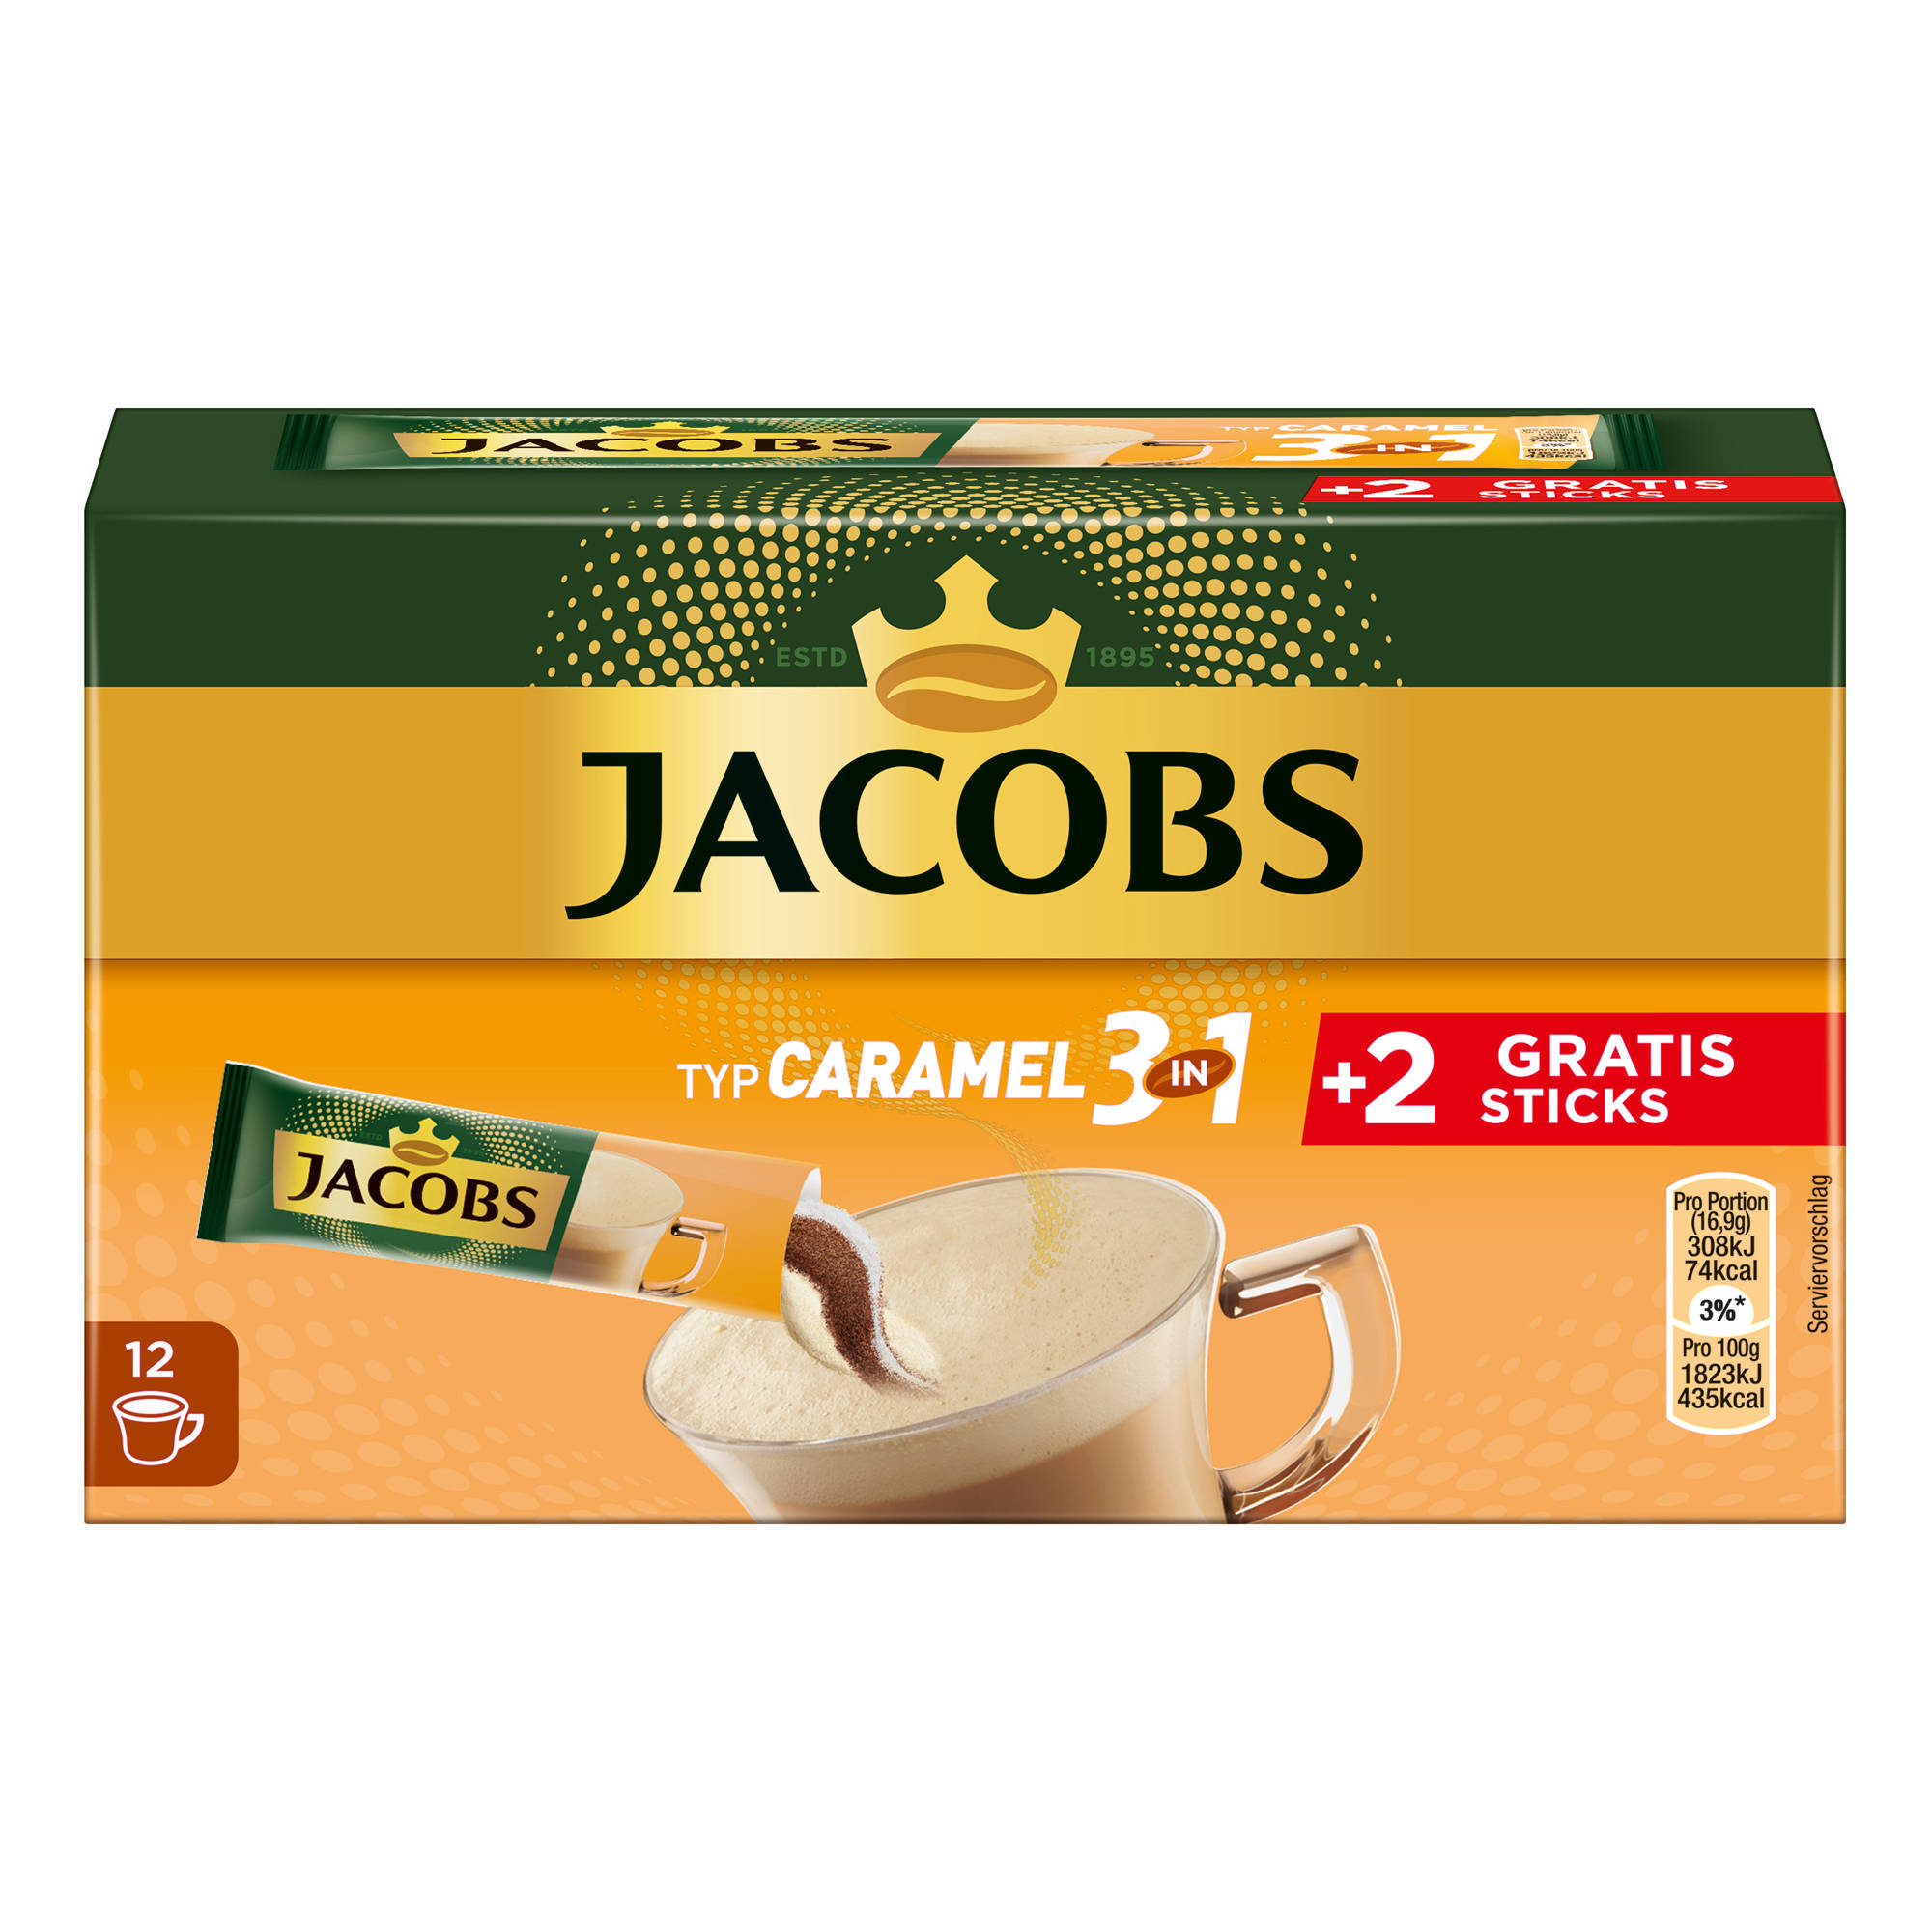 (In Caramel JACOBS 10+2 Getränke x Sticks 3in1 12 auflösen) heißem Instantkaffee Wasser Typ